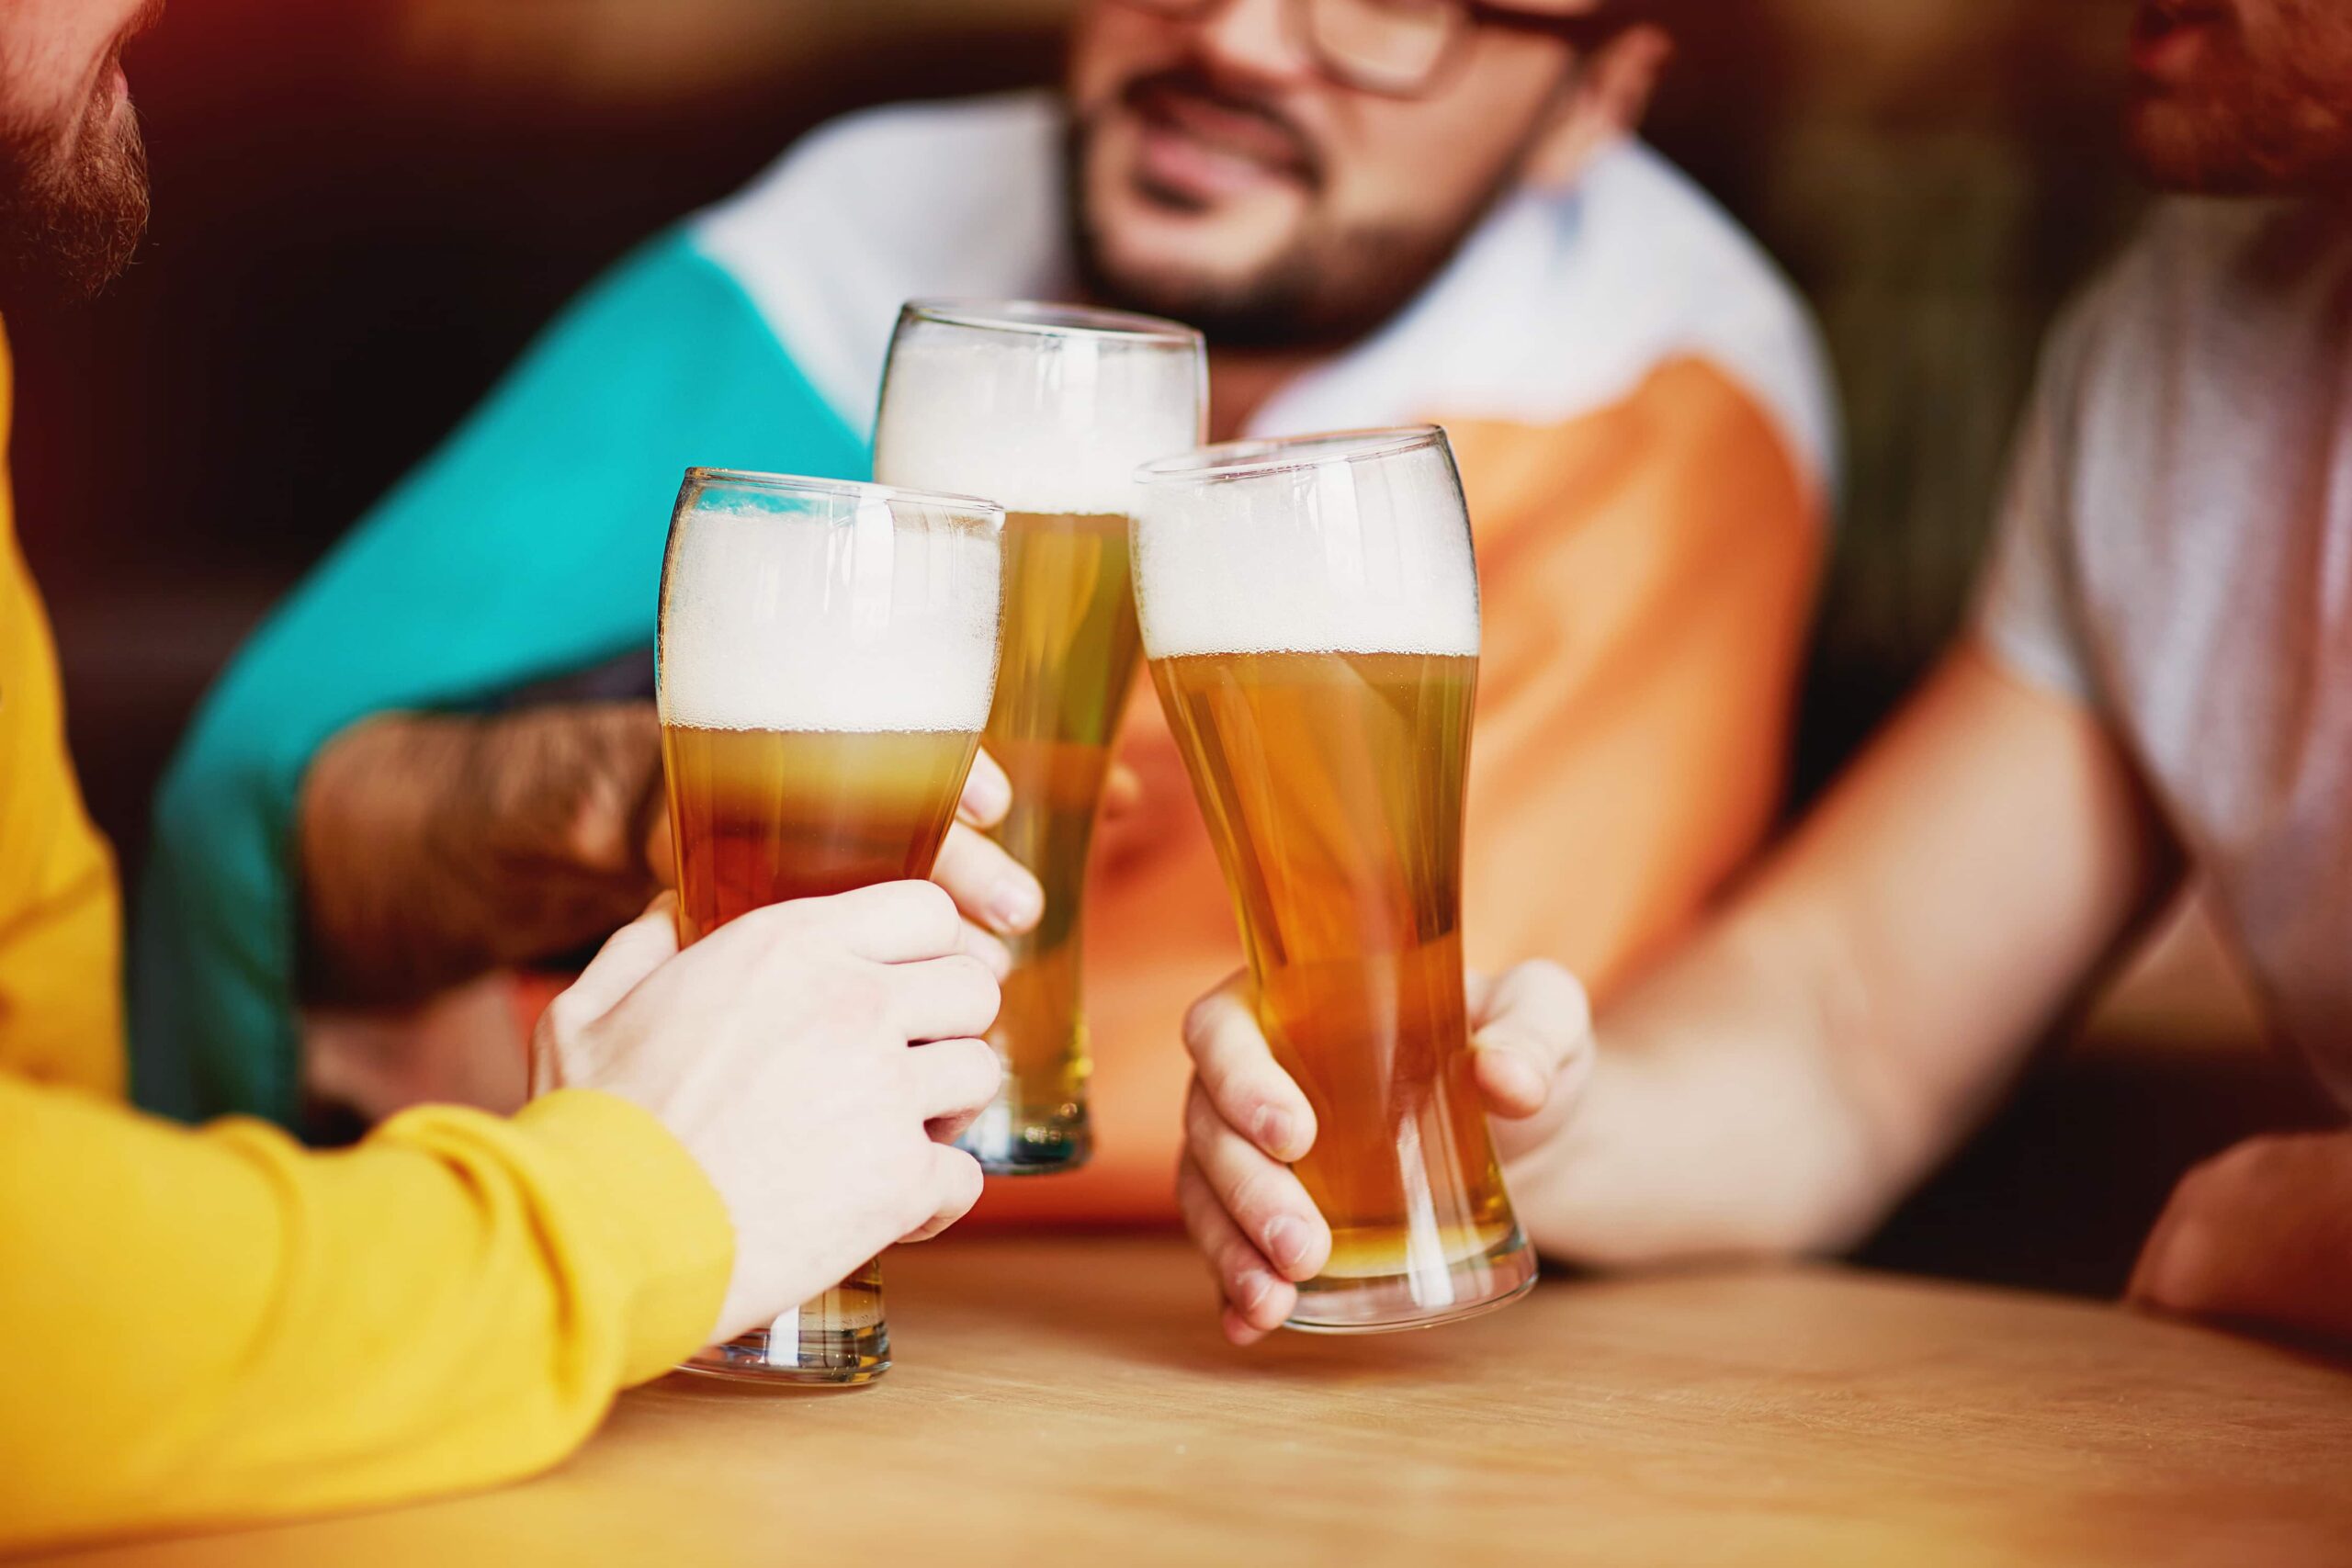 Travellers enjoying a beer together in a bar in Reykjavik